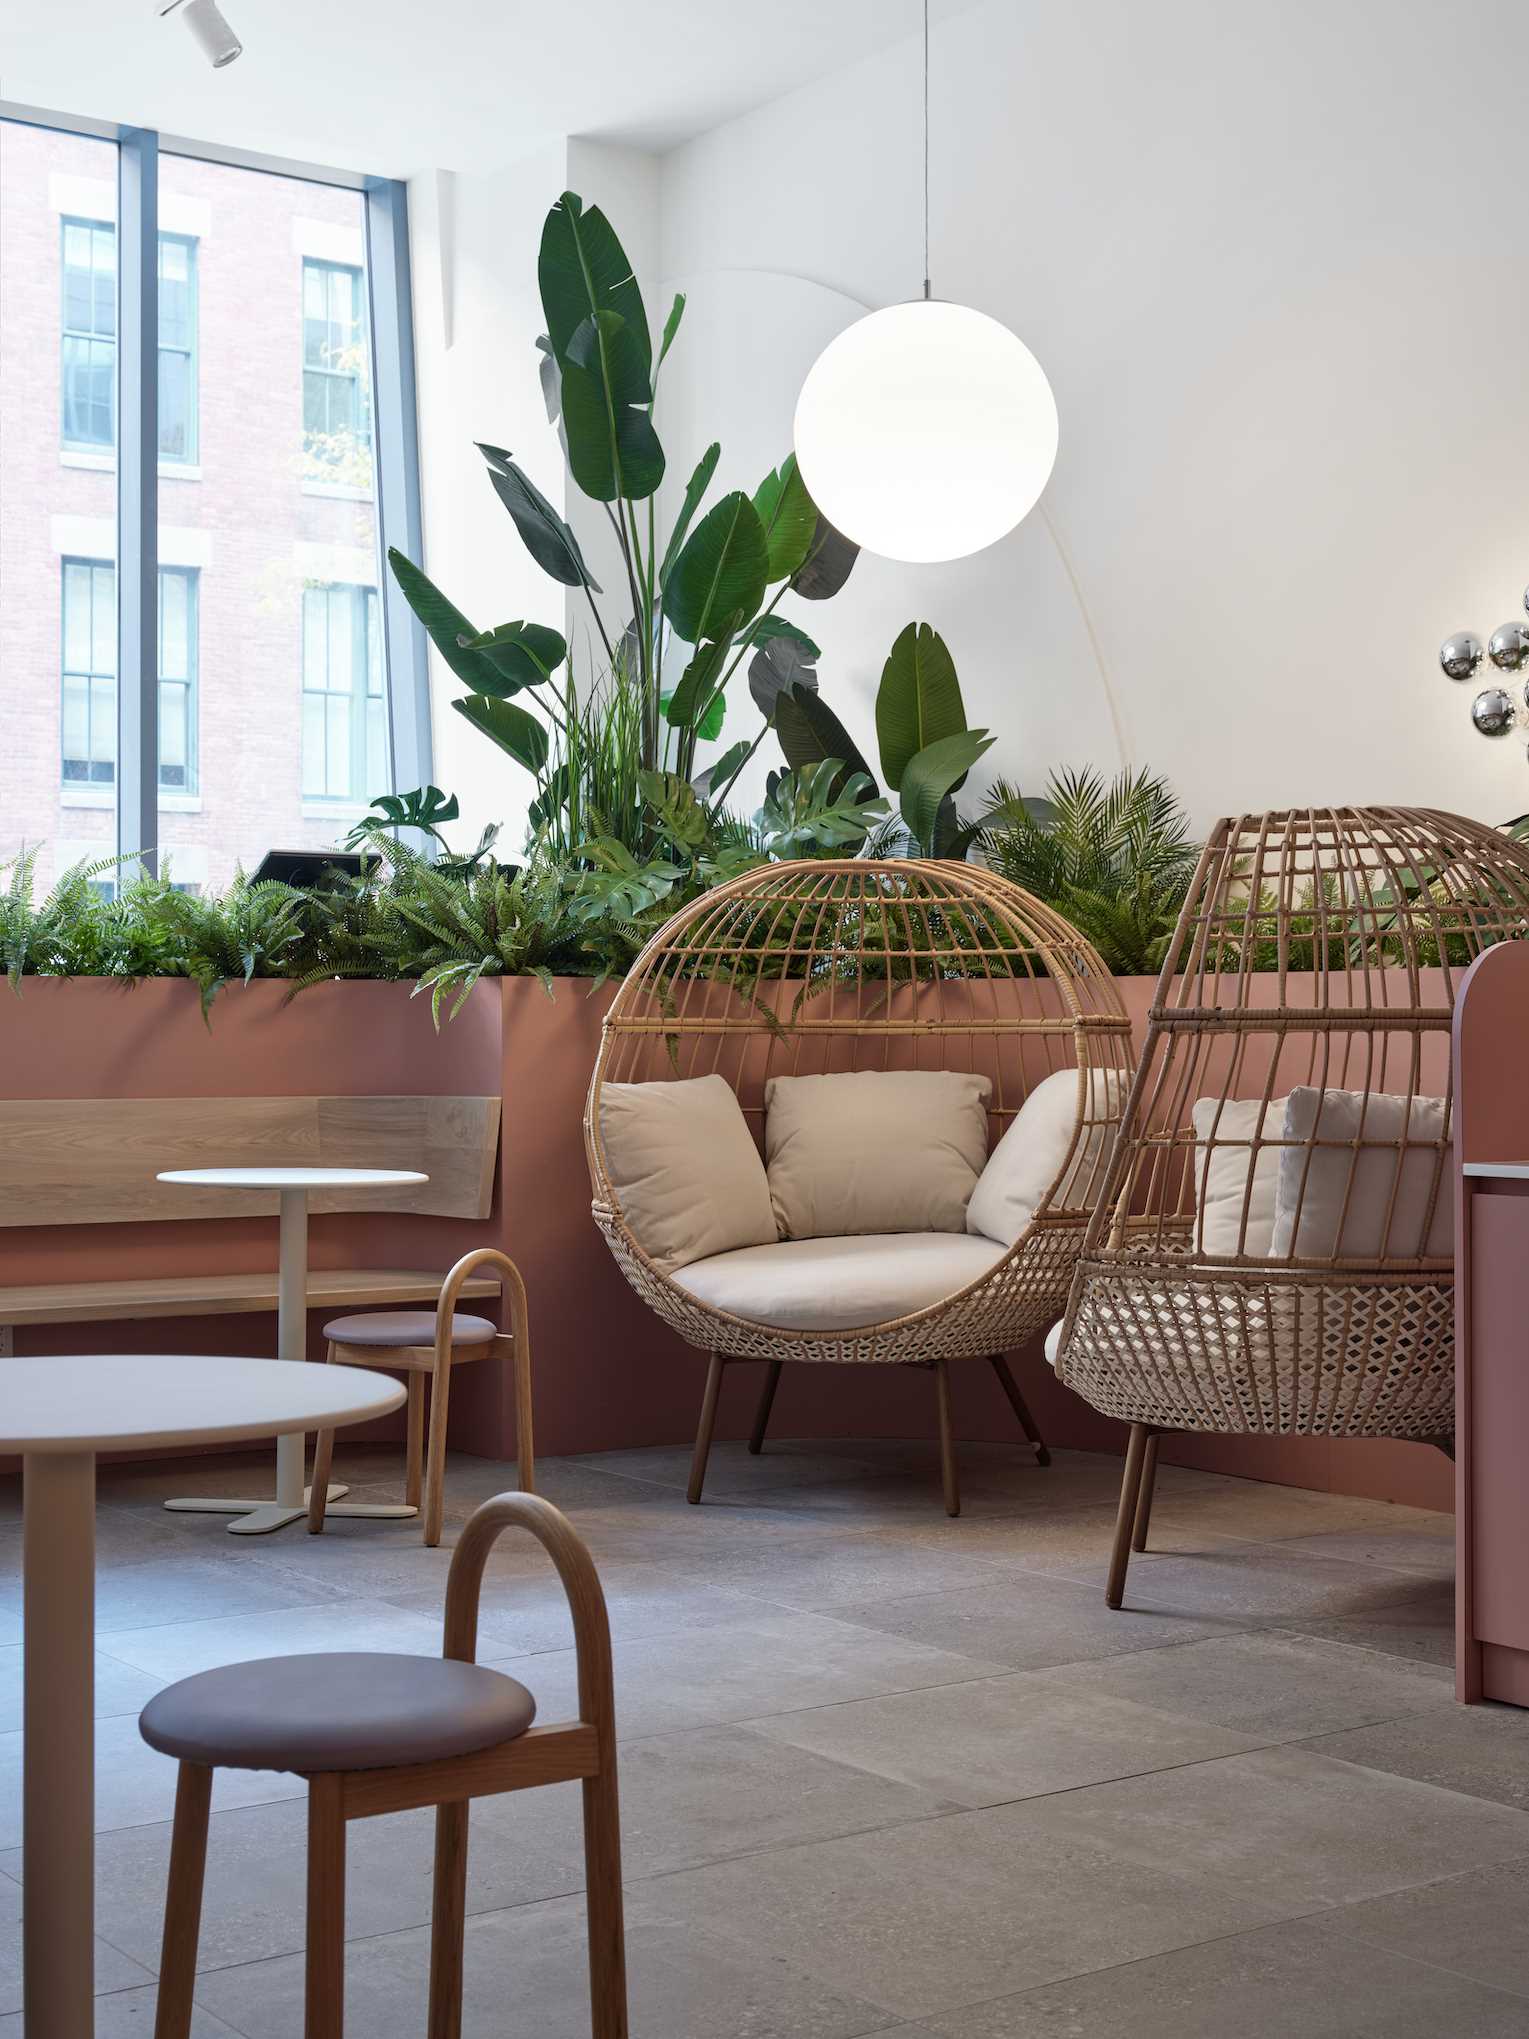 کافه ای مدرن با گیاهان، صندلی های دنج و رنگ های ملایم.